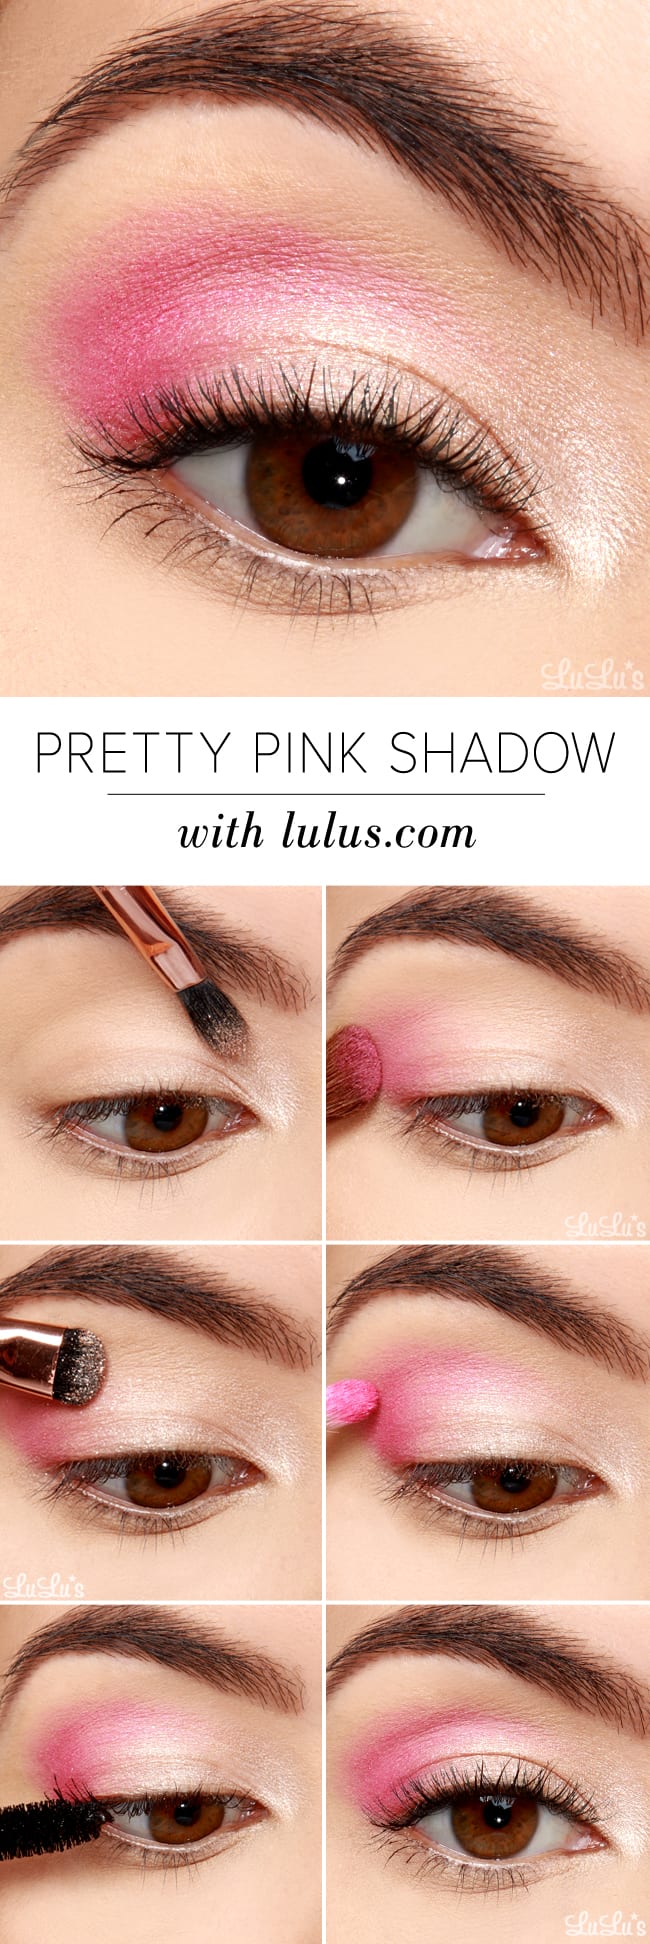 Pretty Pink Eyeshadow Tutorial